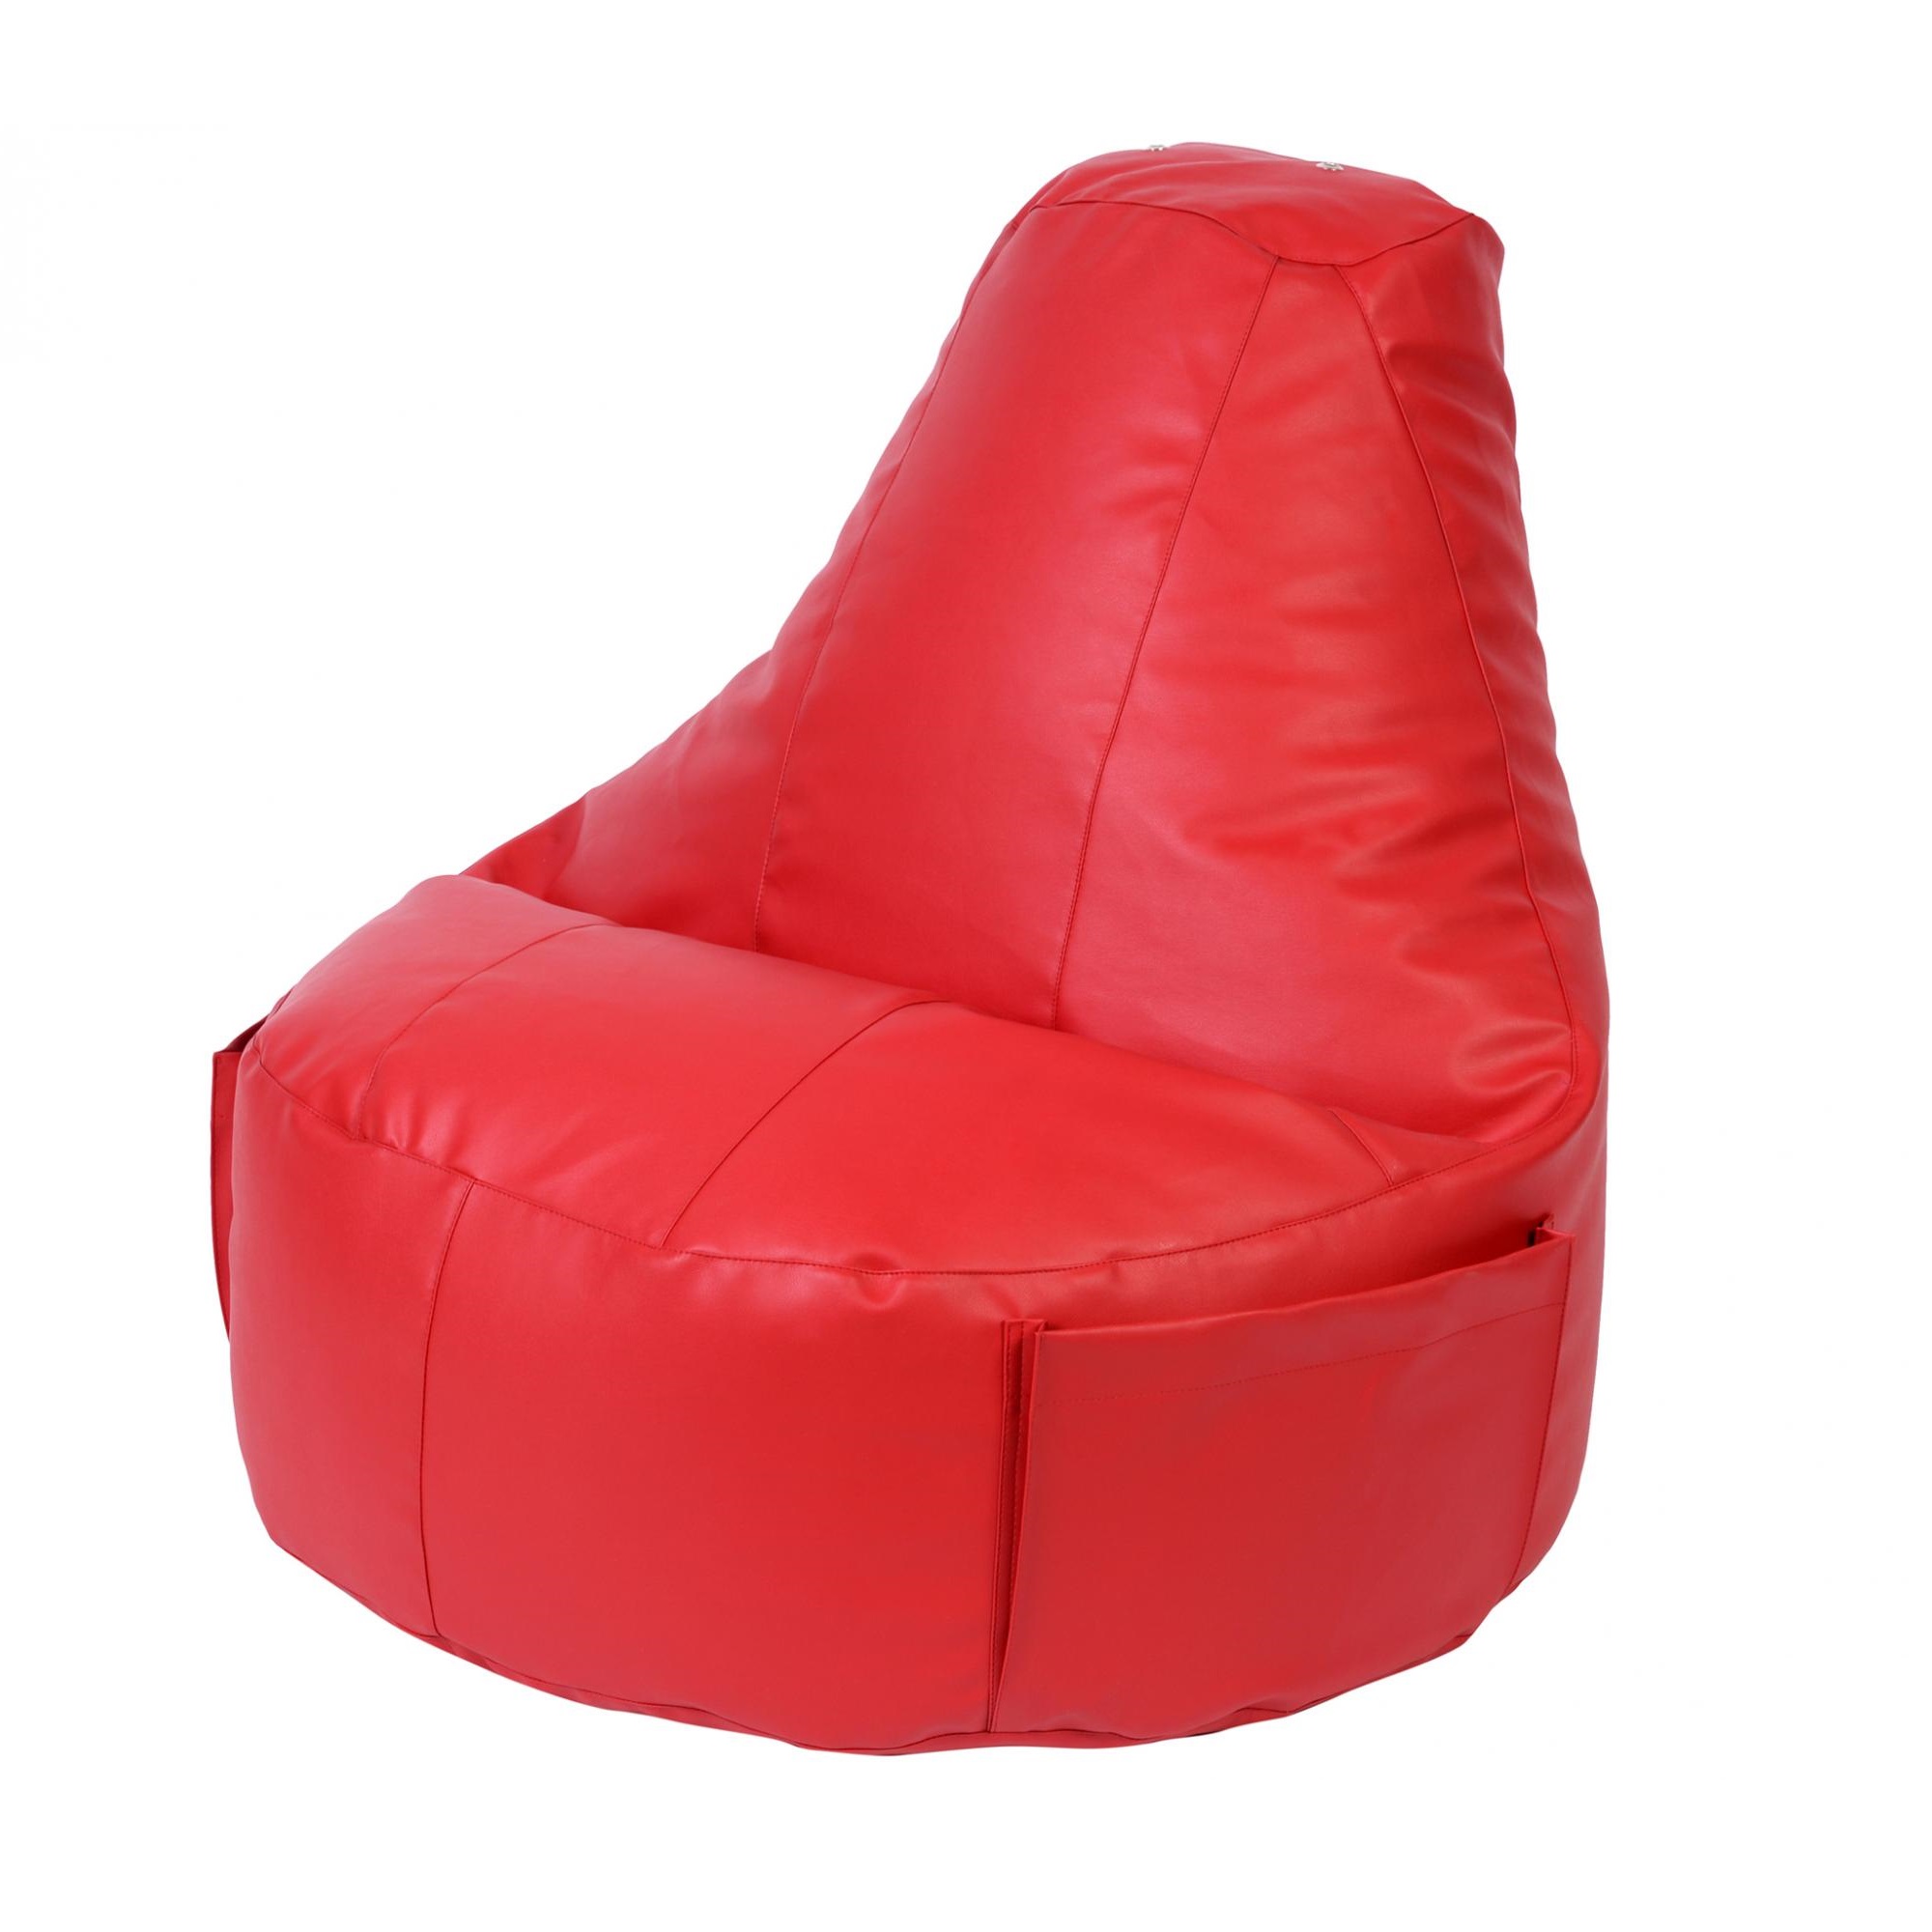 Кресло Dreambag Comfort красное экокожа 150x90 см кресло мешок ашли оранжевая экокожа xl